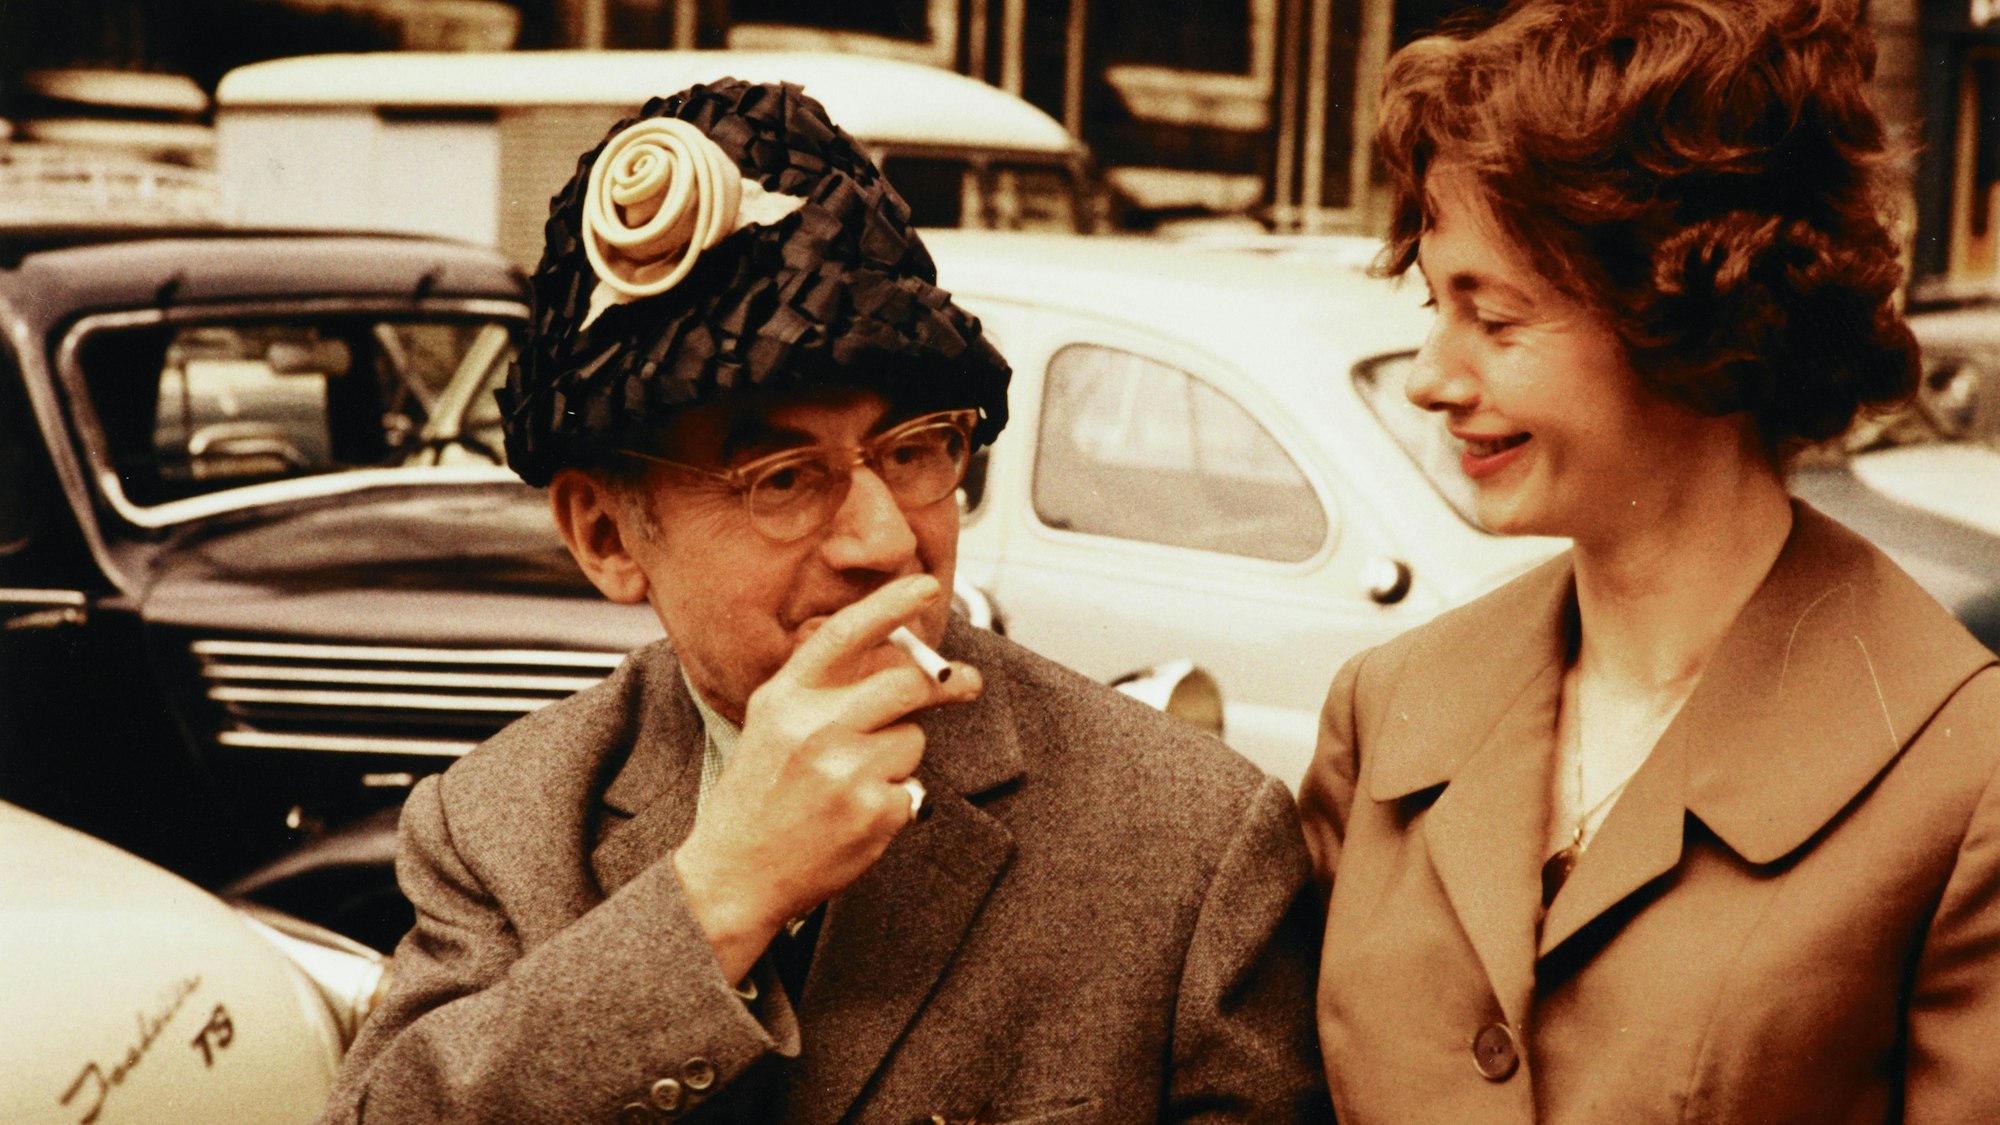 Renate Gruber schaut lächelnd auf den rauchenden Künstler Man Ray, der zum Spaß ihren Hut trägt.